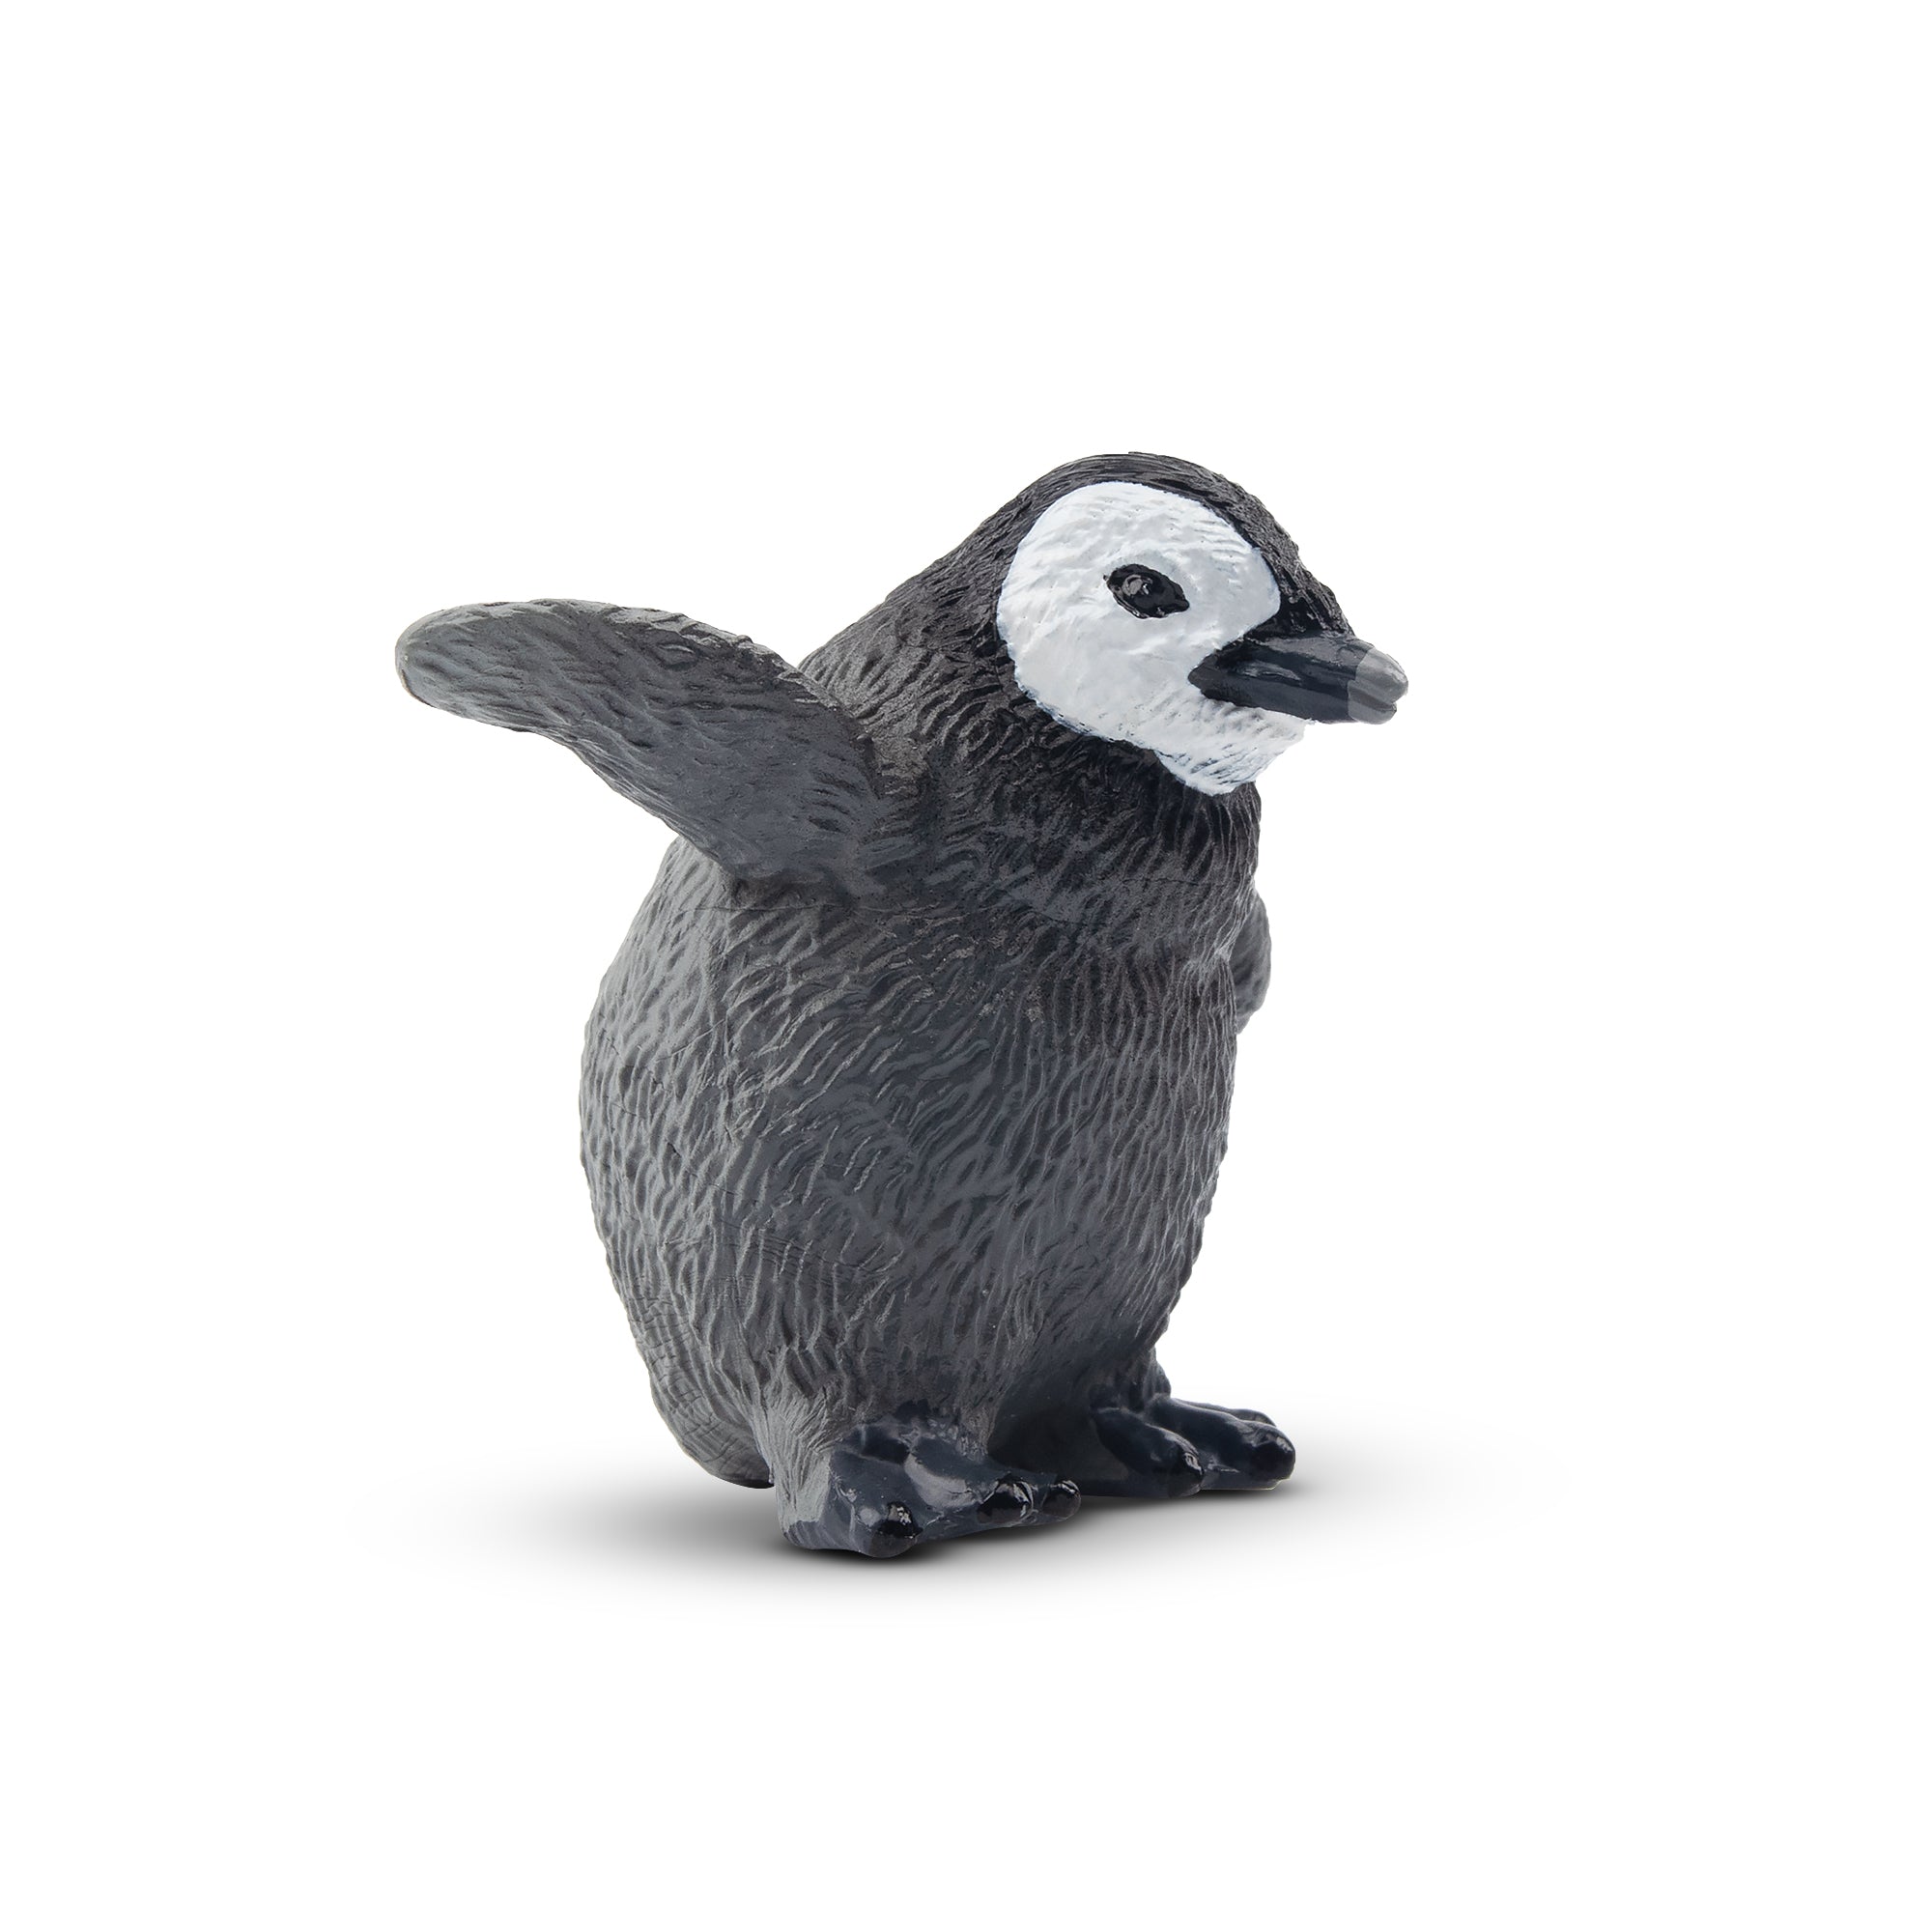 Toymany Emperor Penguin Baby Figurine Toy-2